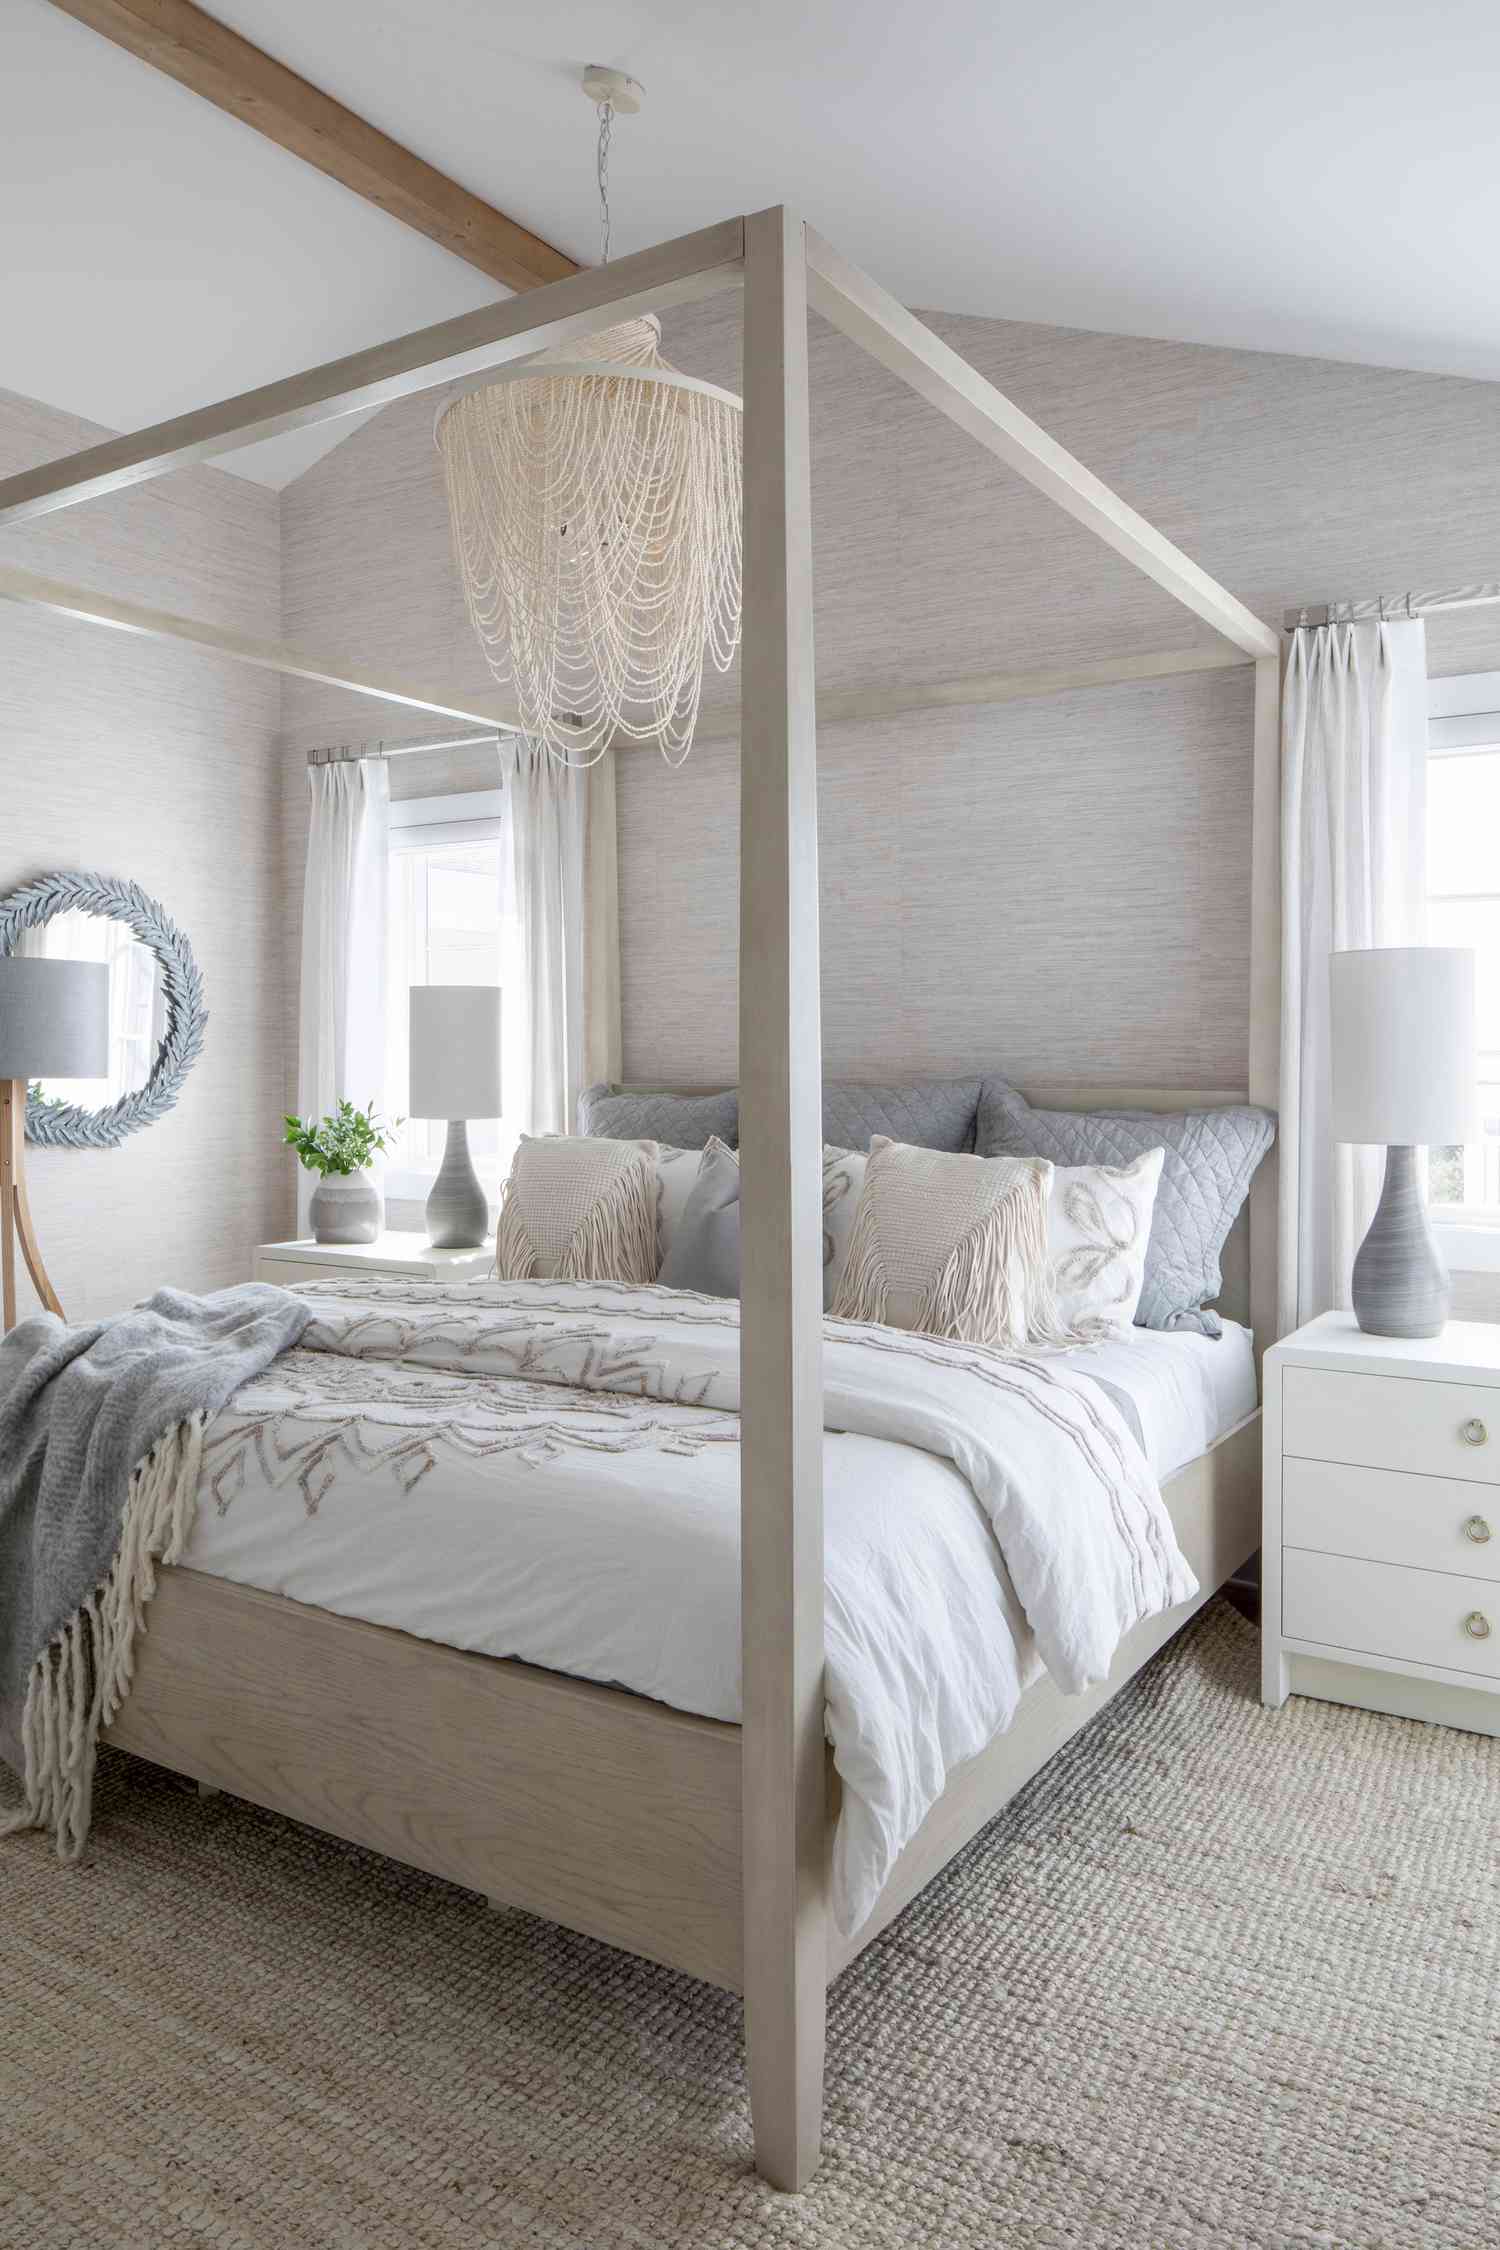 Un dormitorio de la casa de Karen B. Wolfe en Long Beach Island, con colores arena, azul y blanco